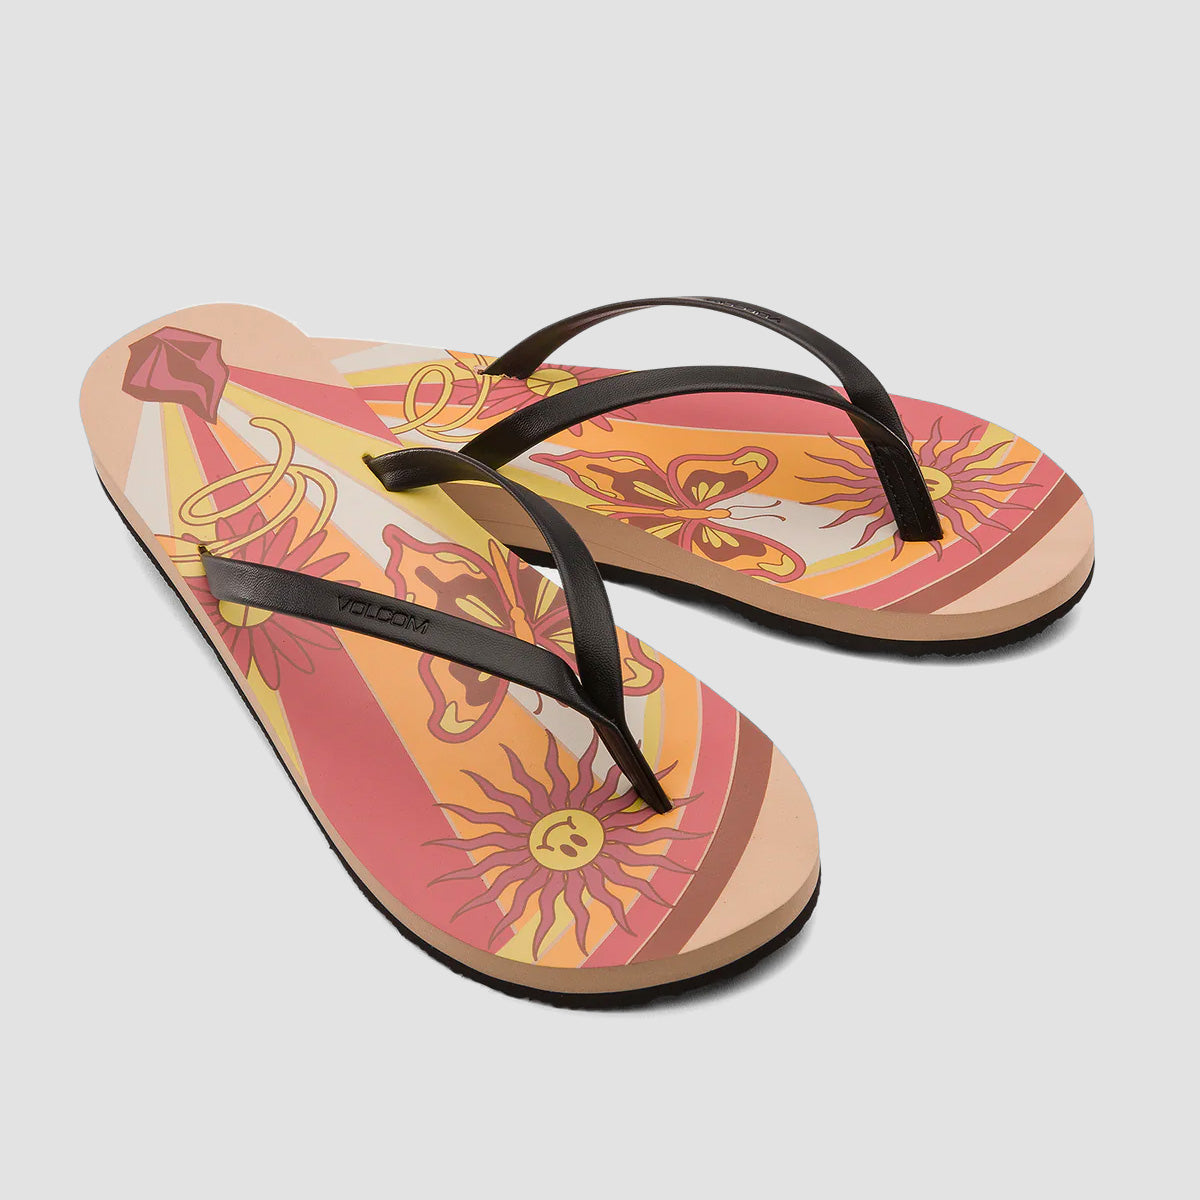 Volcom Colour Me Spring Sandals Hazelnut - Womens